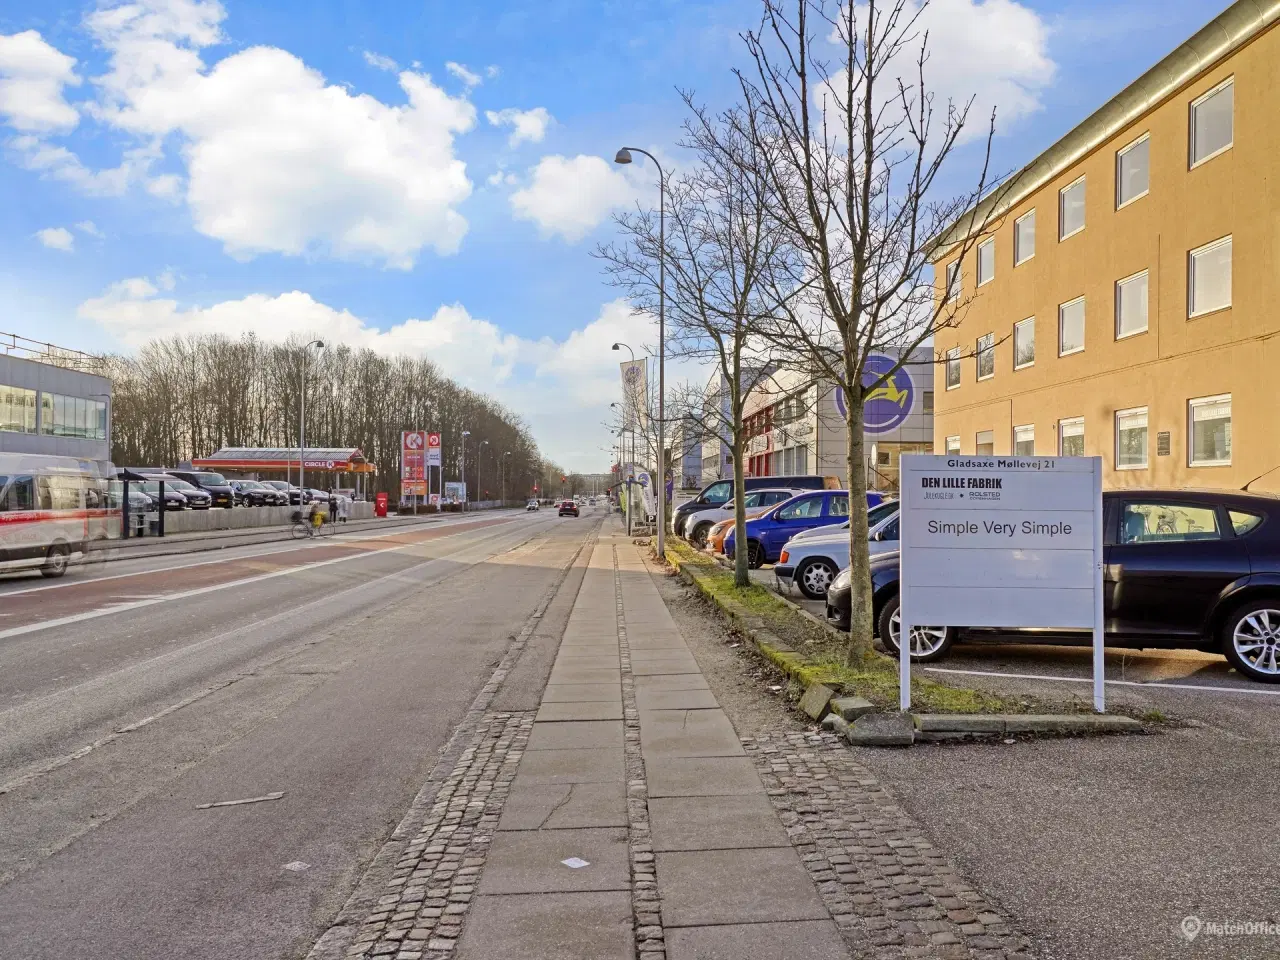 Billede 7 - Flerbrugerejendom i Søborg med god placering tæt på motorvejsnettet og offentlig transport.